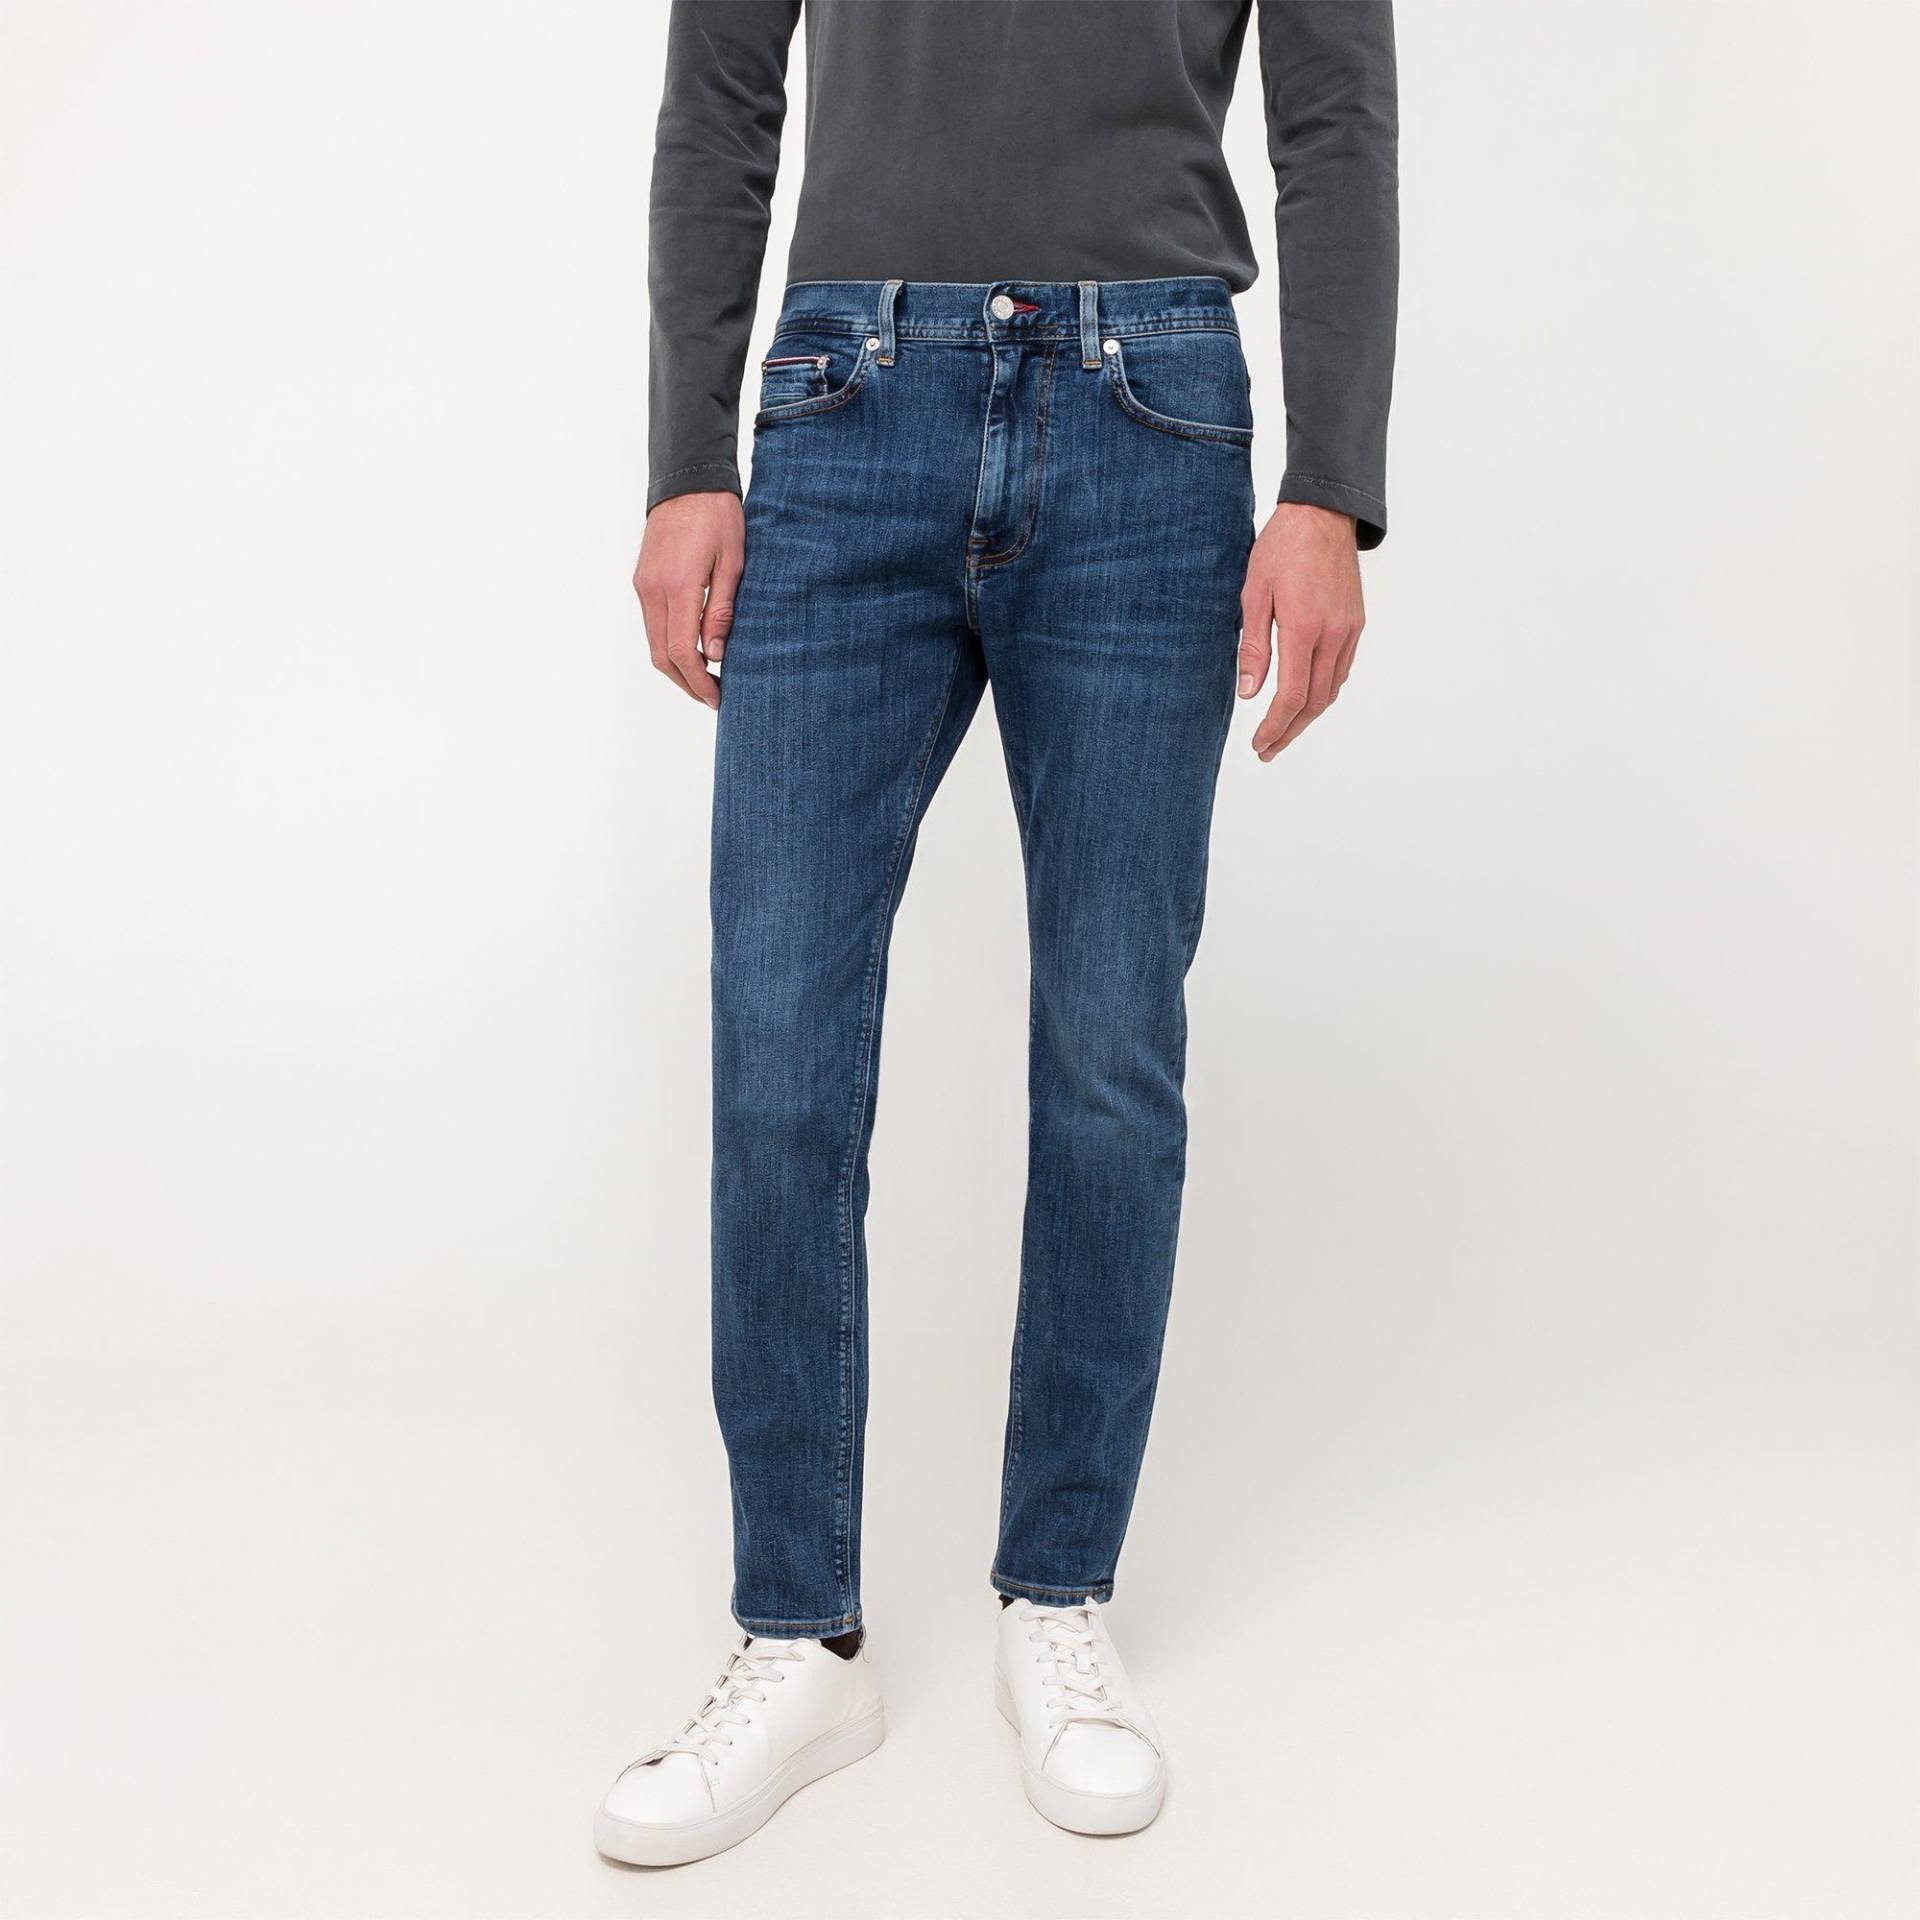 Jeans, Slim Fit Herren Blau  L32/W38 von TOMMY HILFIGER